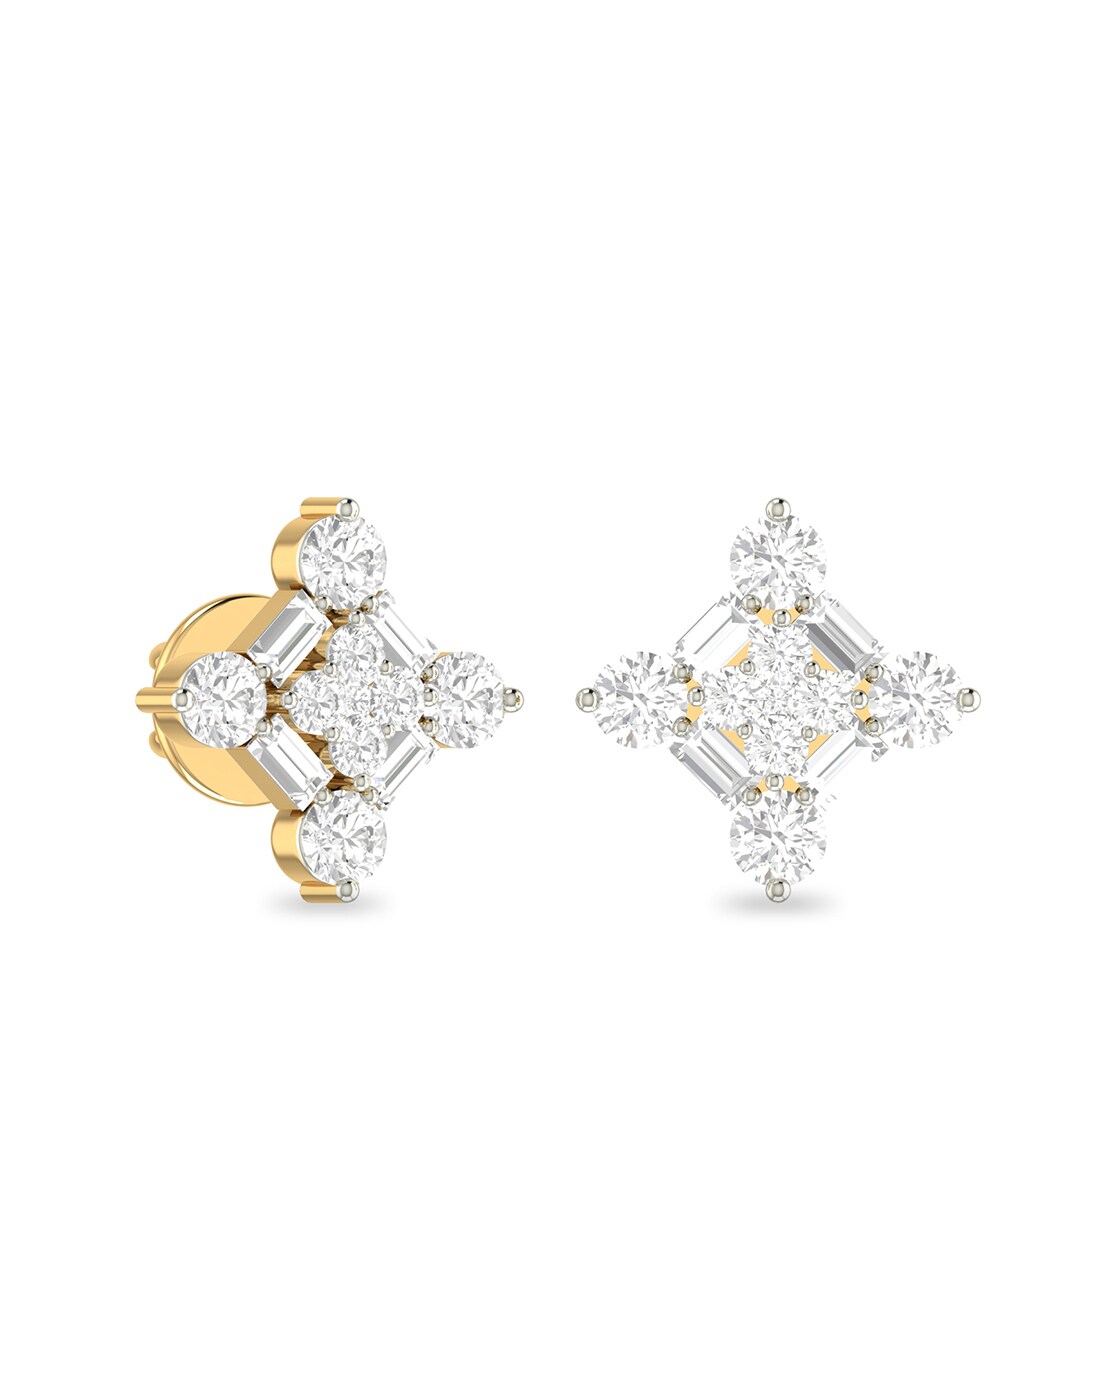 Buy Daily wear Diamond Earrings for Women Online